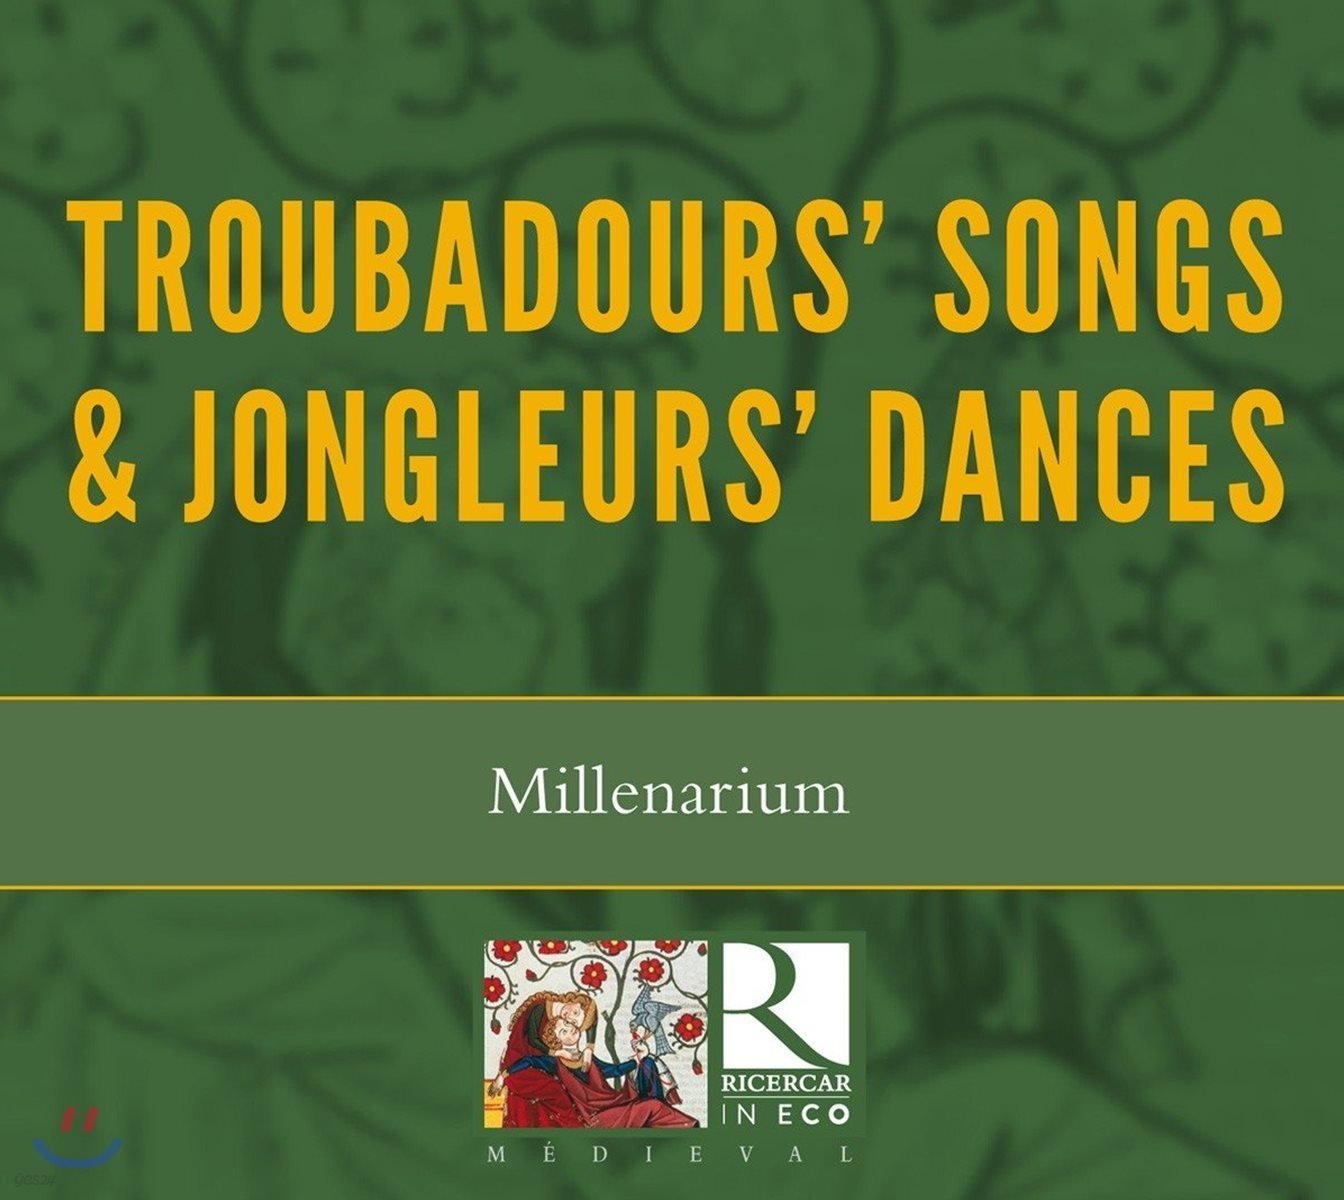 Millenarium 트루바두르 노래와 종글뢰르 춤곡 (Troubadours' Songs & Jongleurs' Dances)